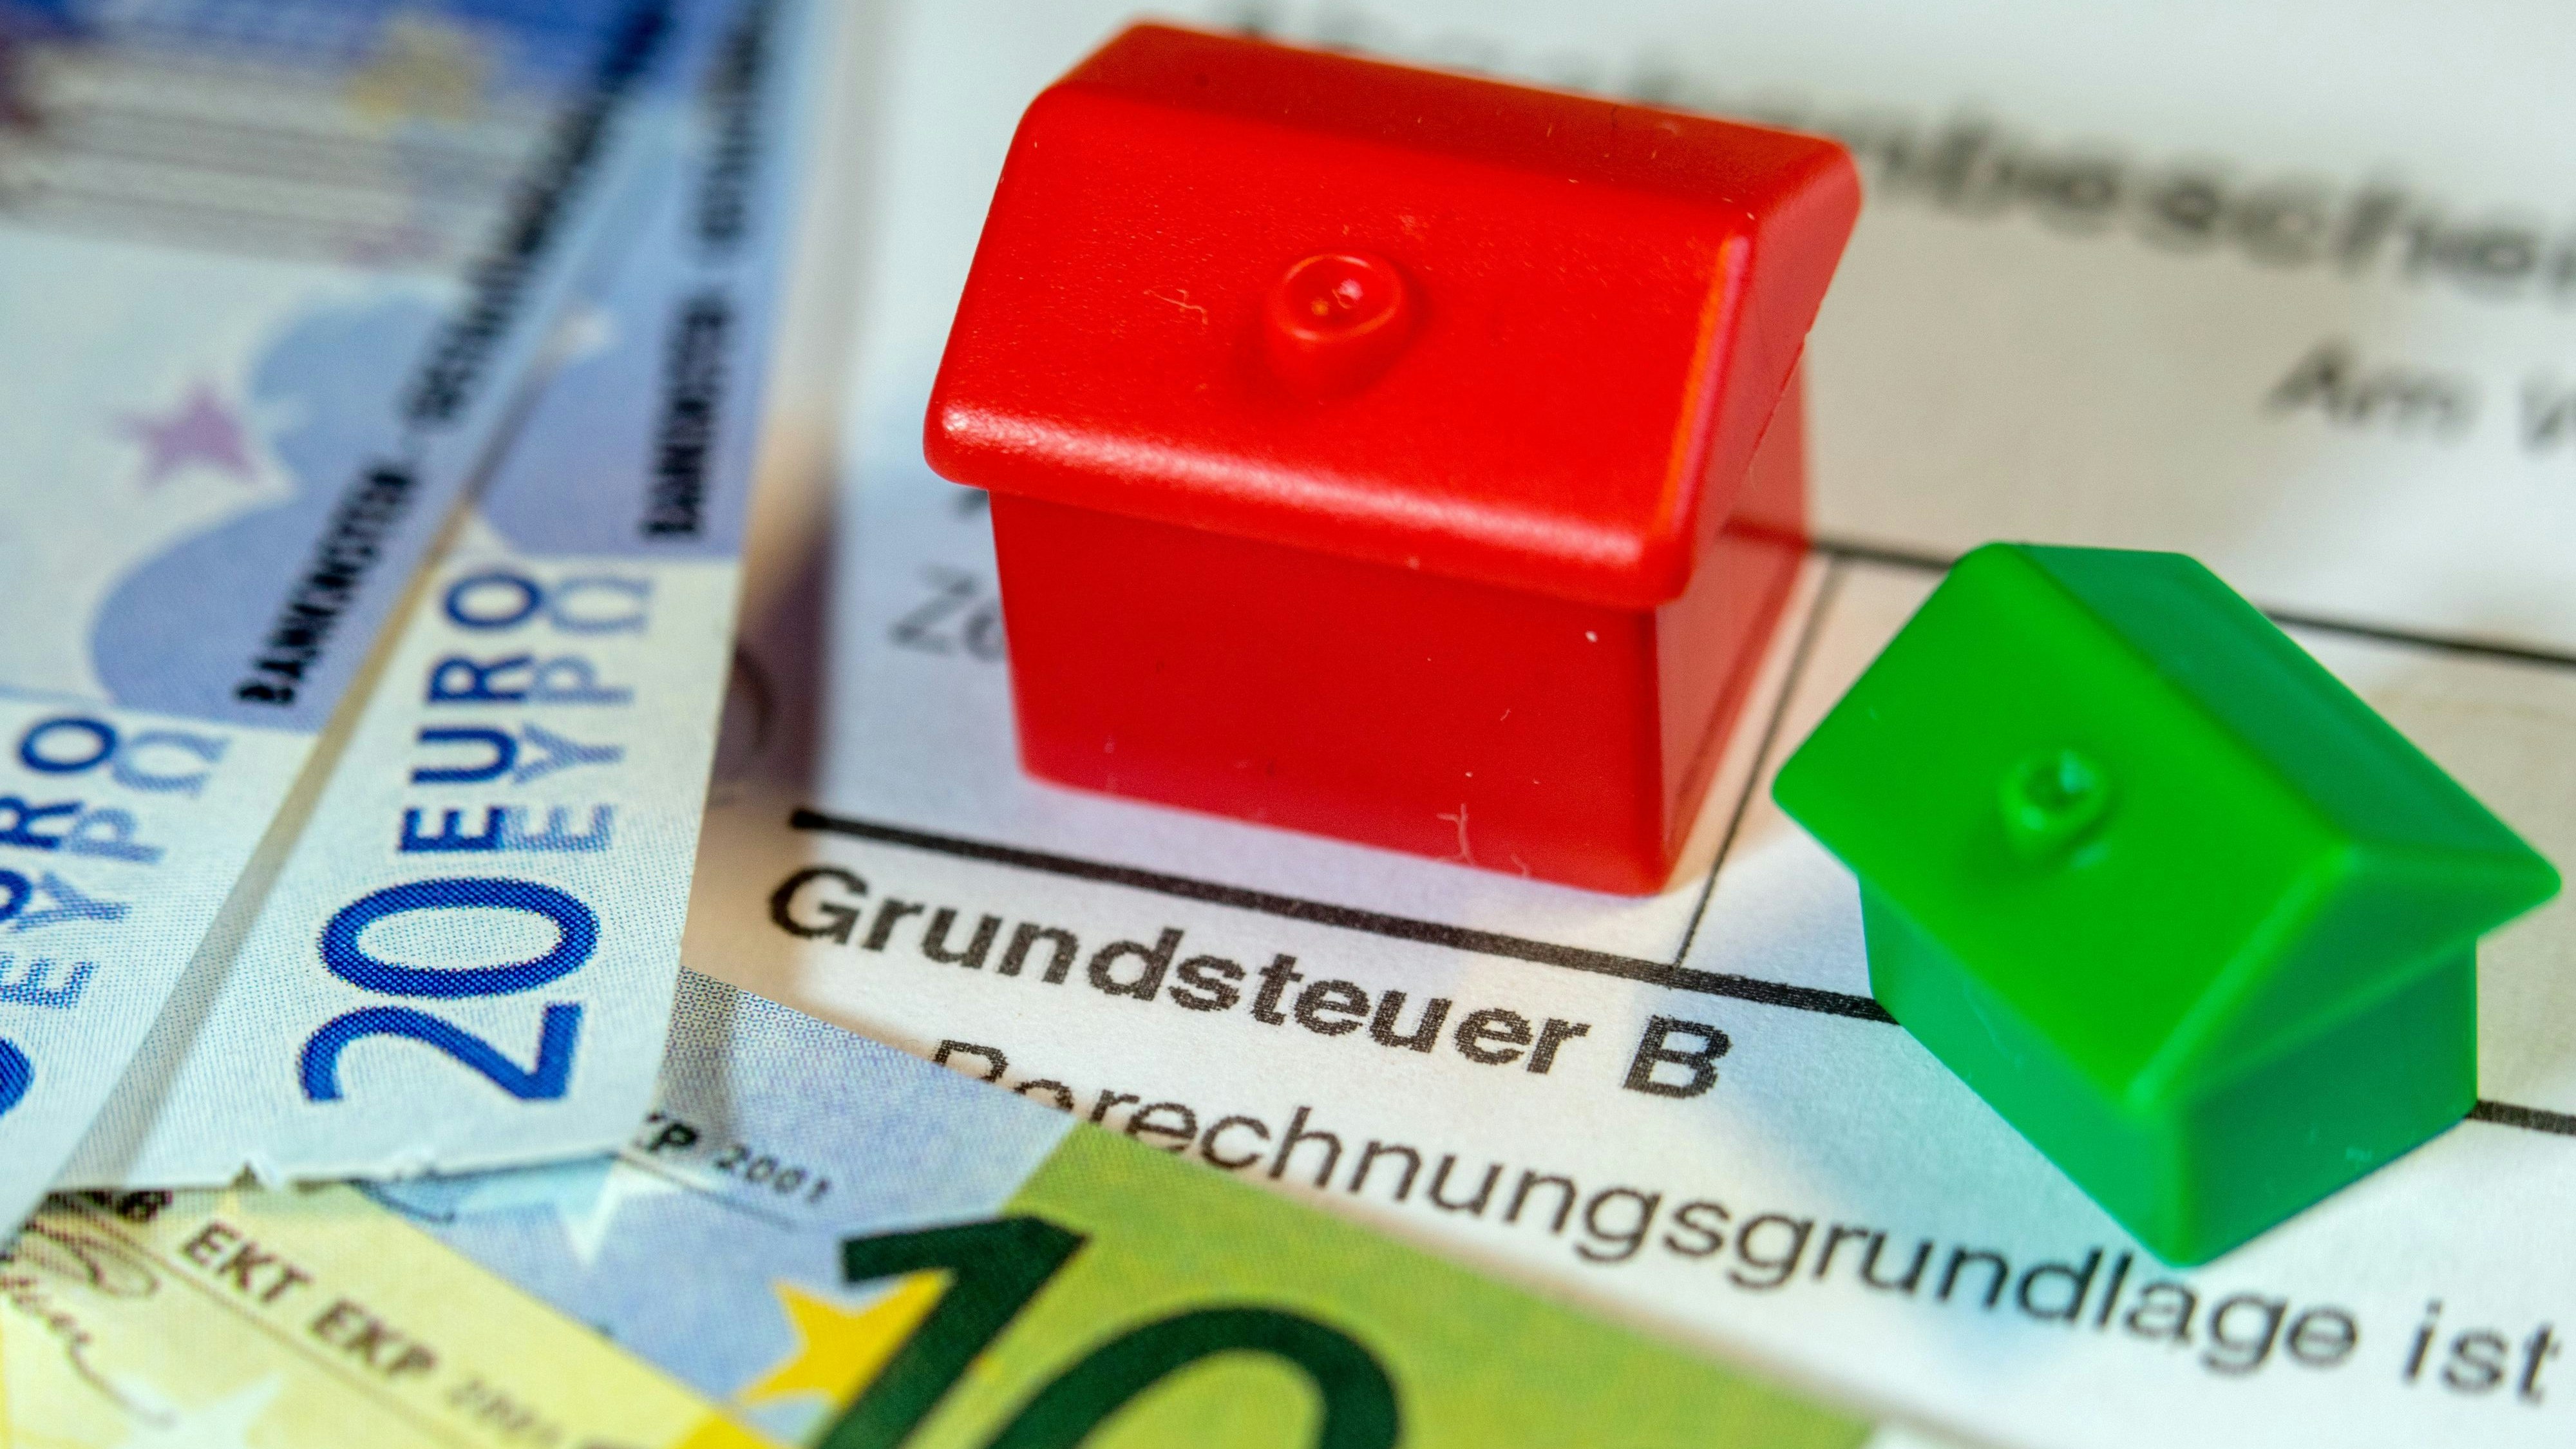 Die Grundsteuer wird neu berechnet. Bis zum 31. Oktober müssen Immobilieneigentümer den Finanzämtern die Daten ihrer Grundstücke übermitteln.&nbsp; Foto: dpa/Büttner